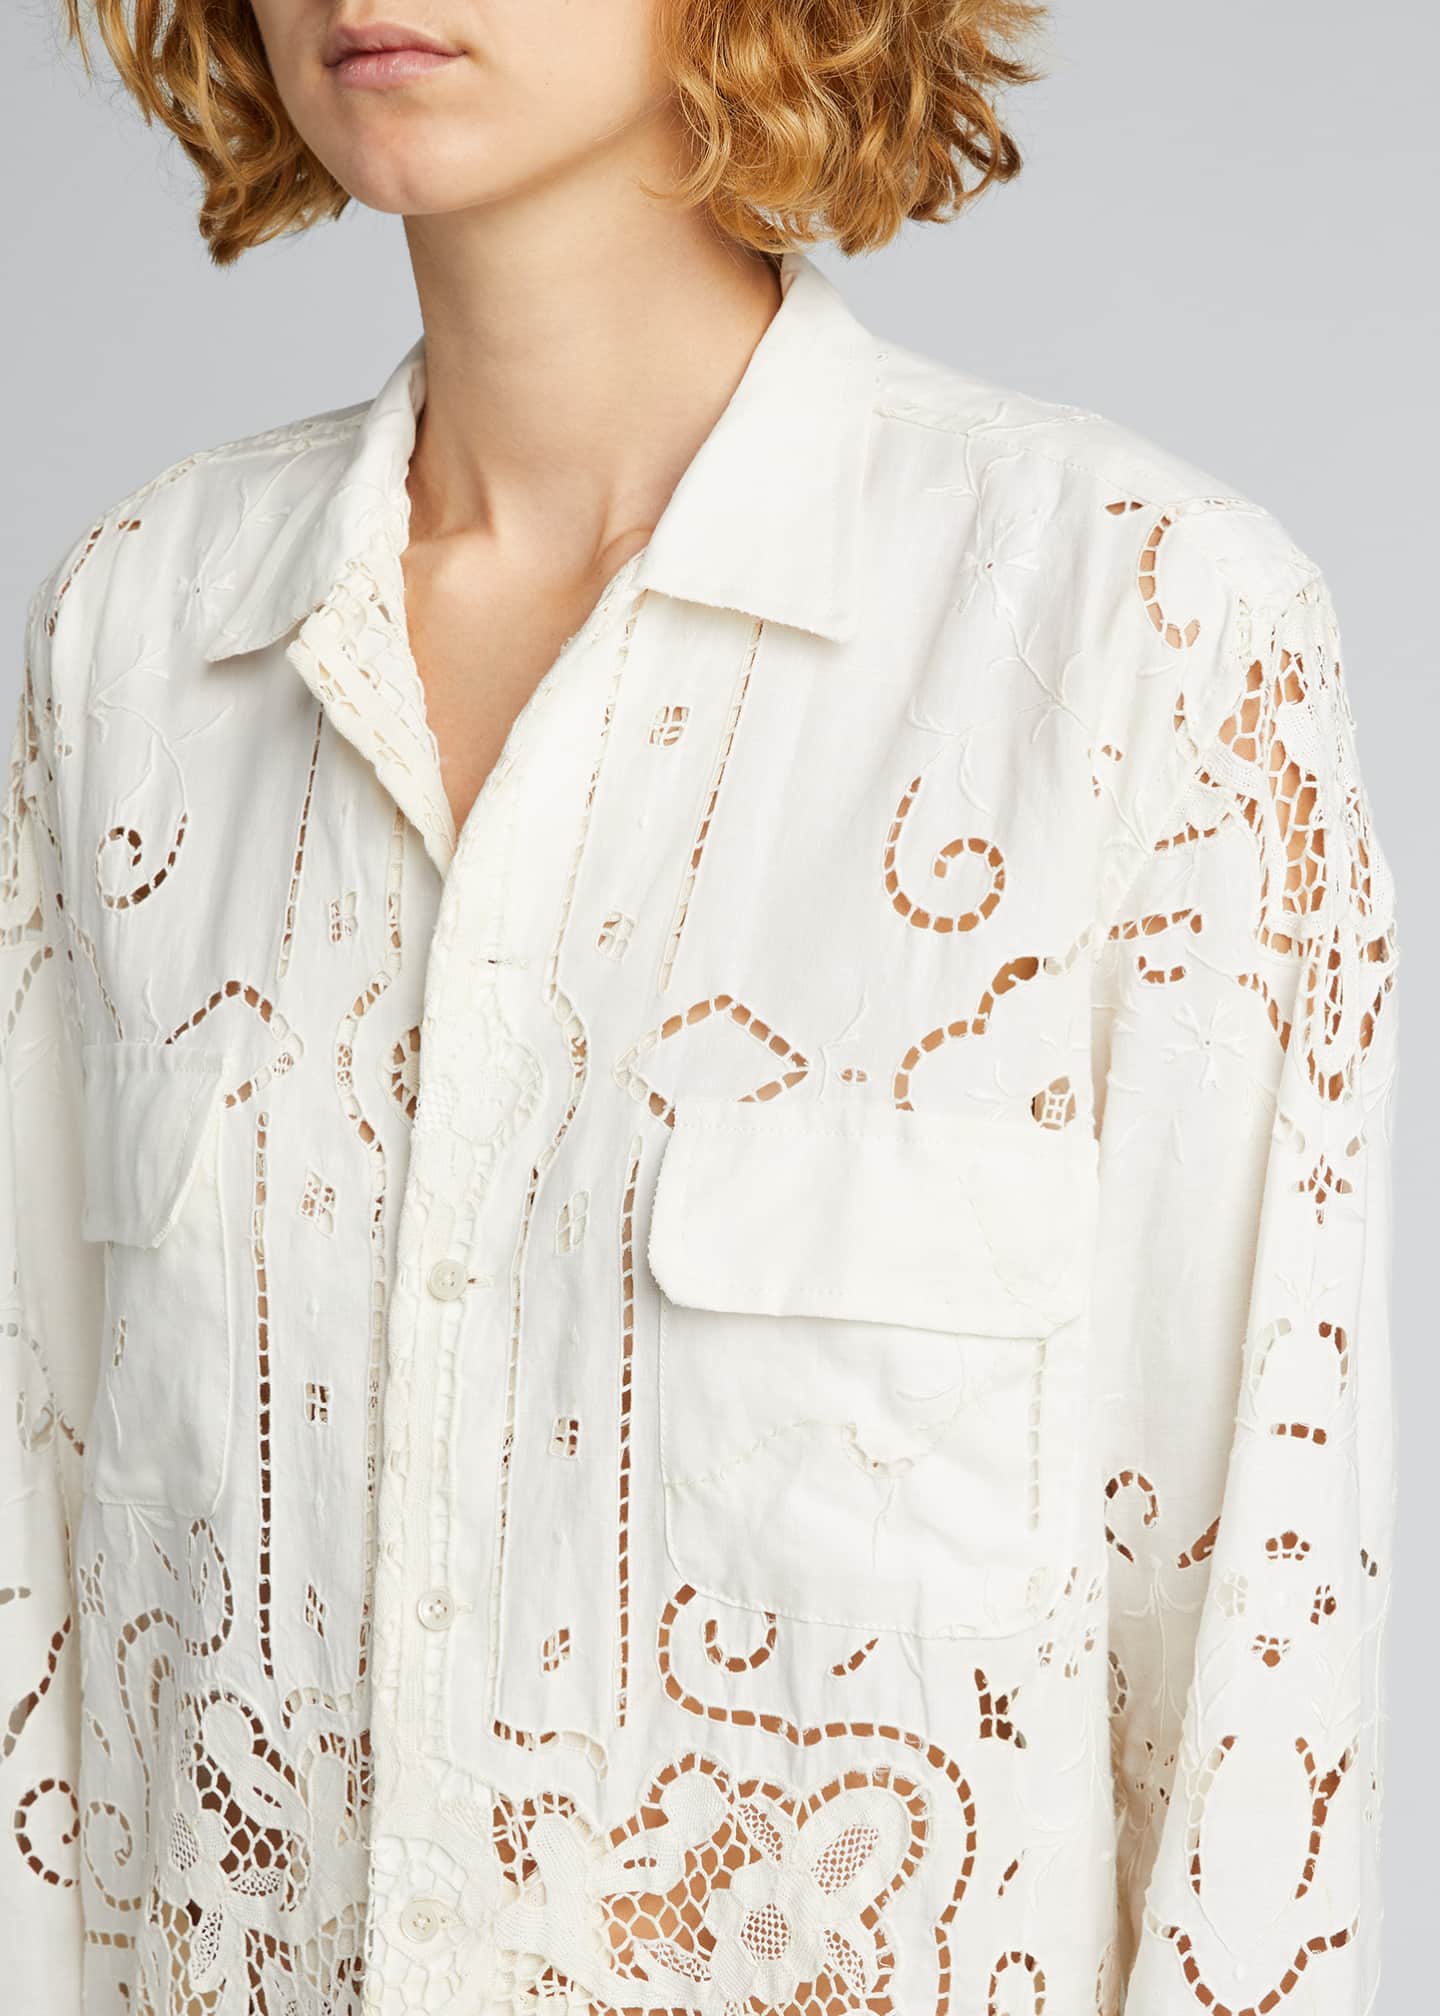 Bode One-of-a-Kind Cutwork Lace Linen Shirt - Bergdorf Goodman